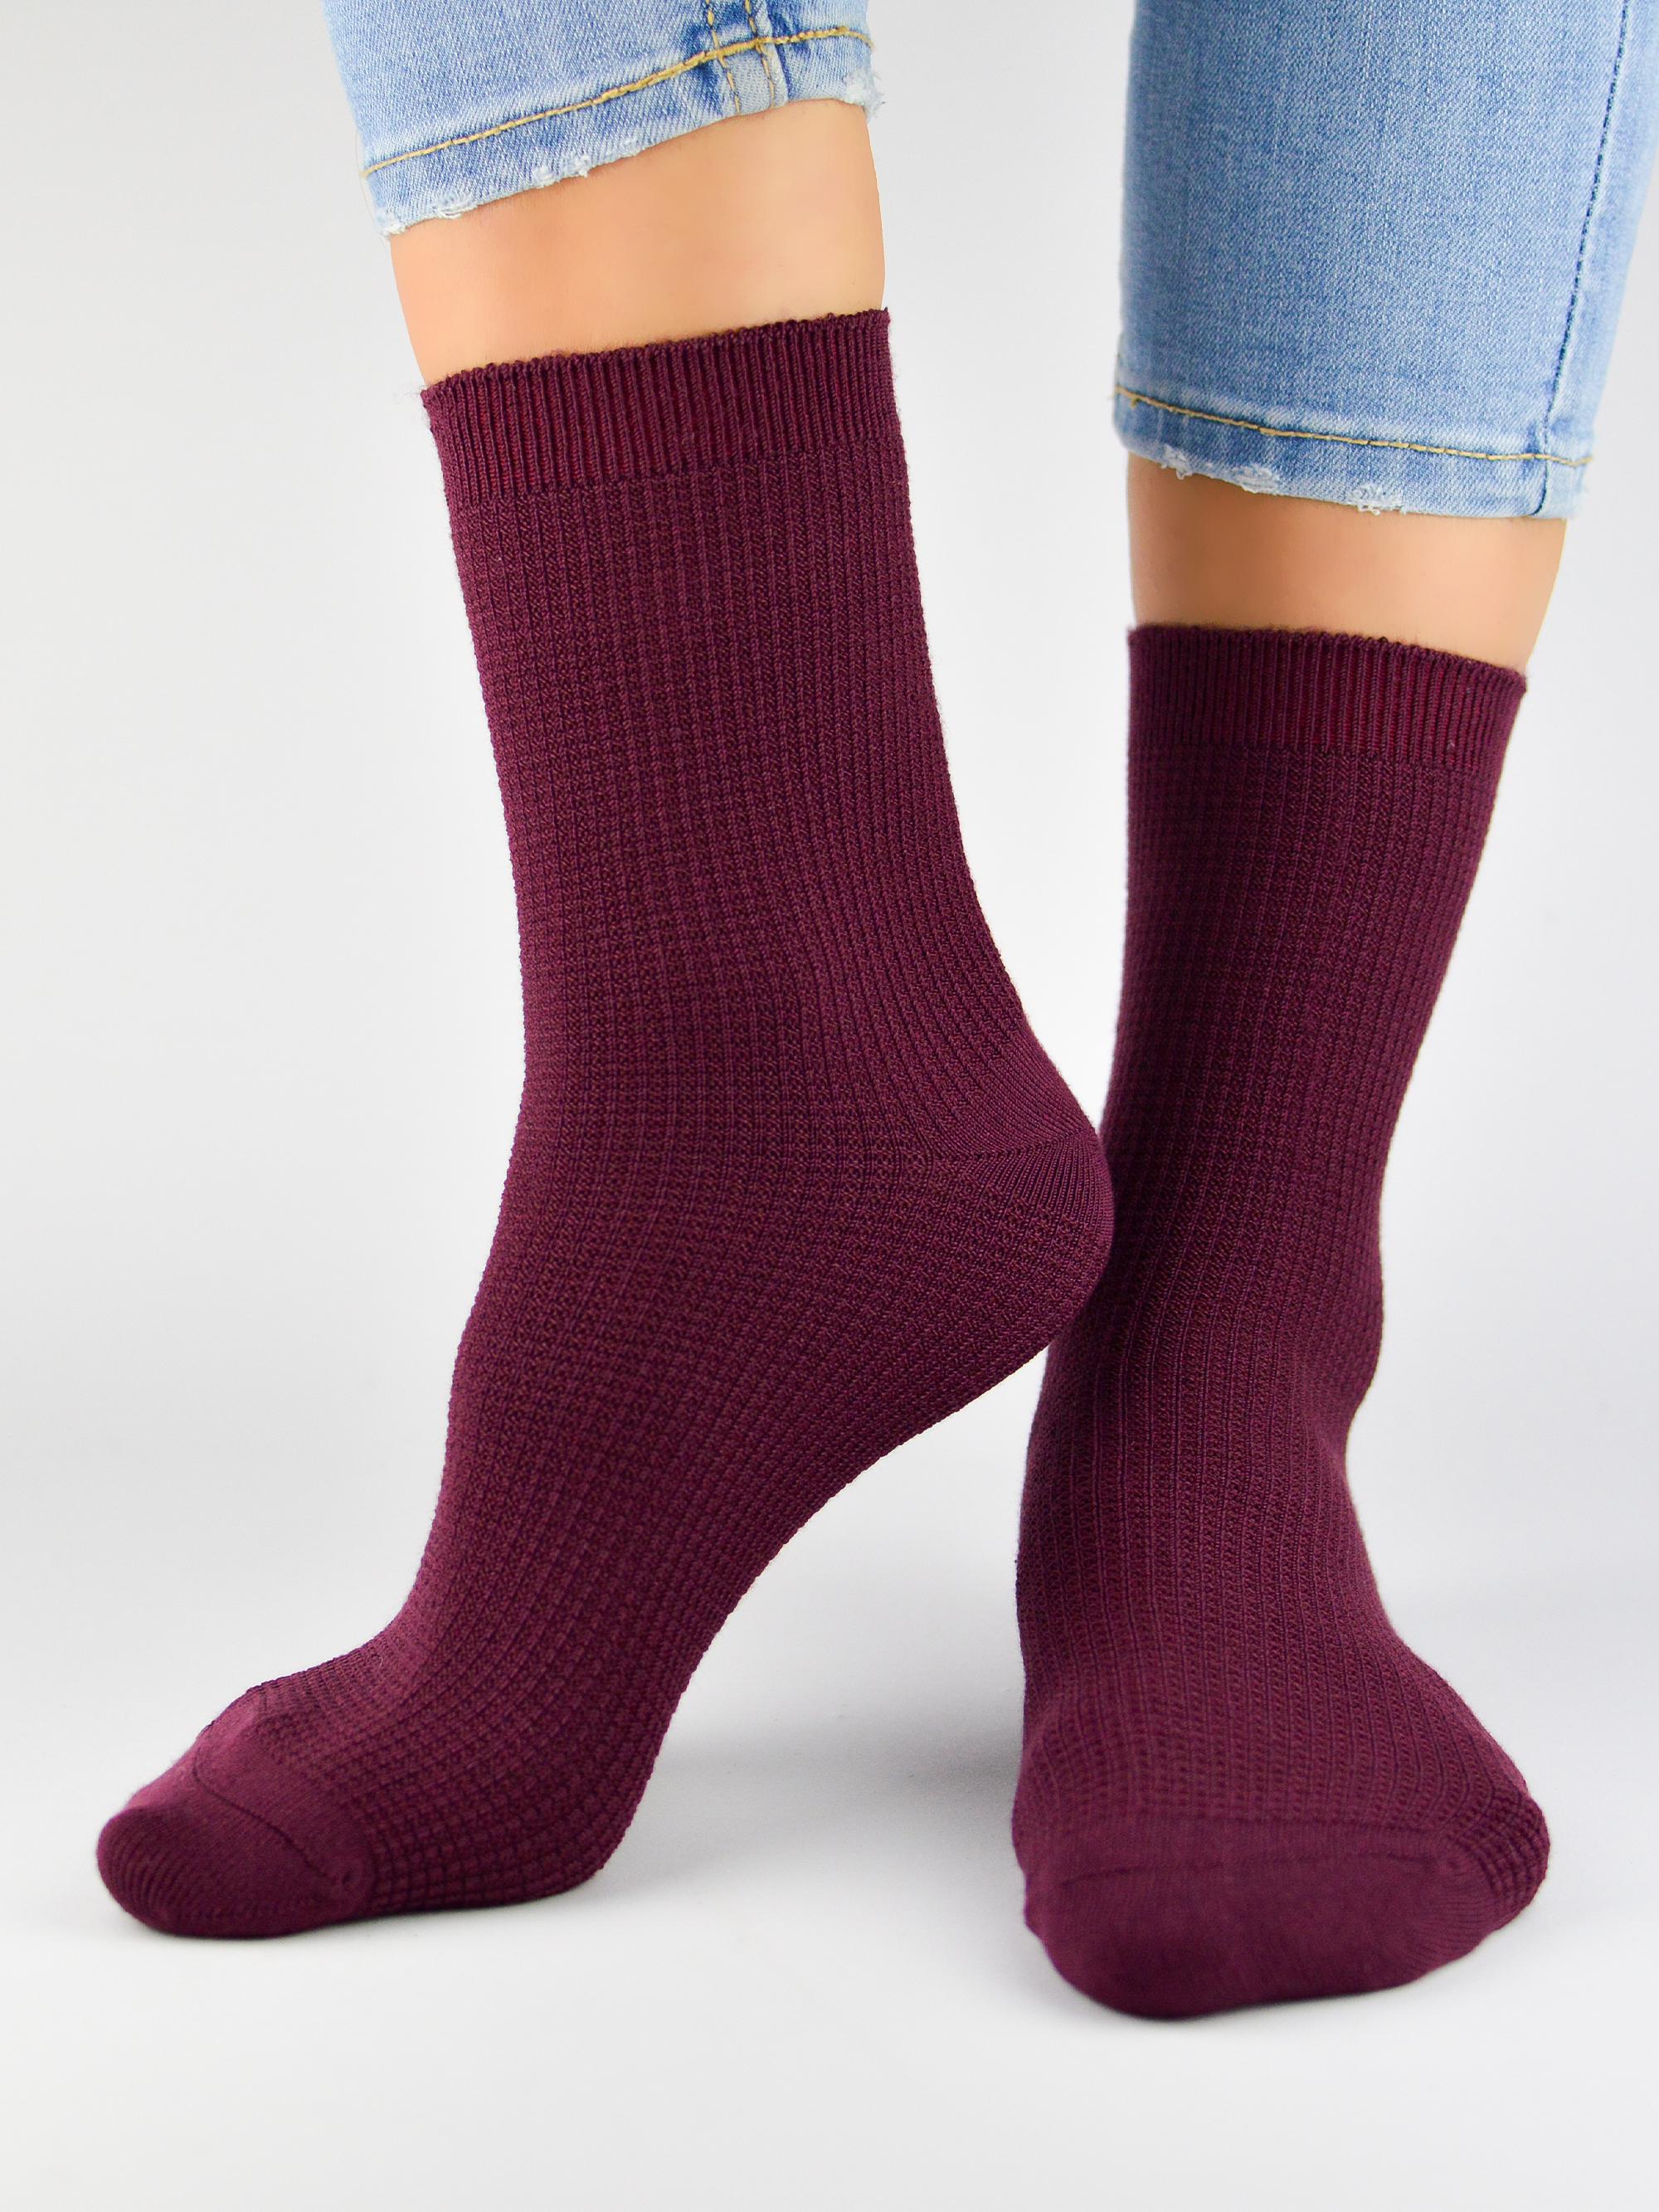 NOVITI Woman's Socks SB040-W-02